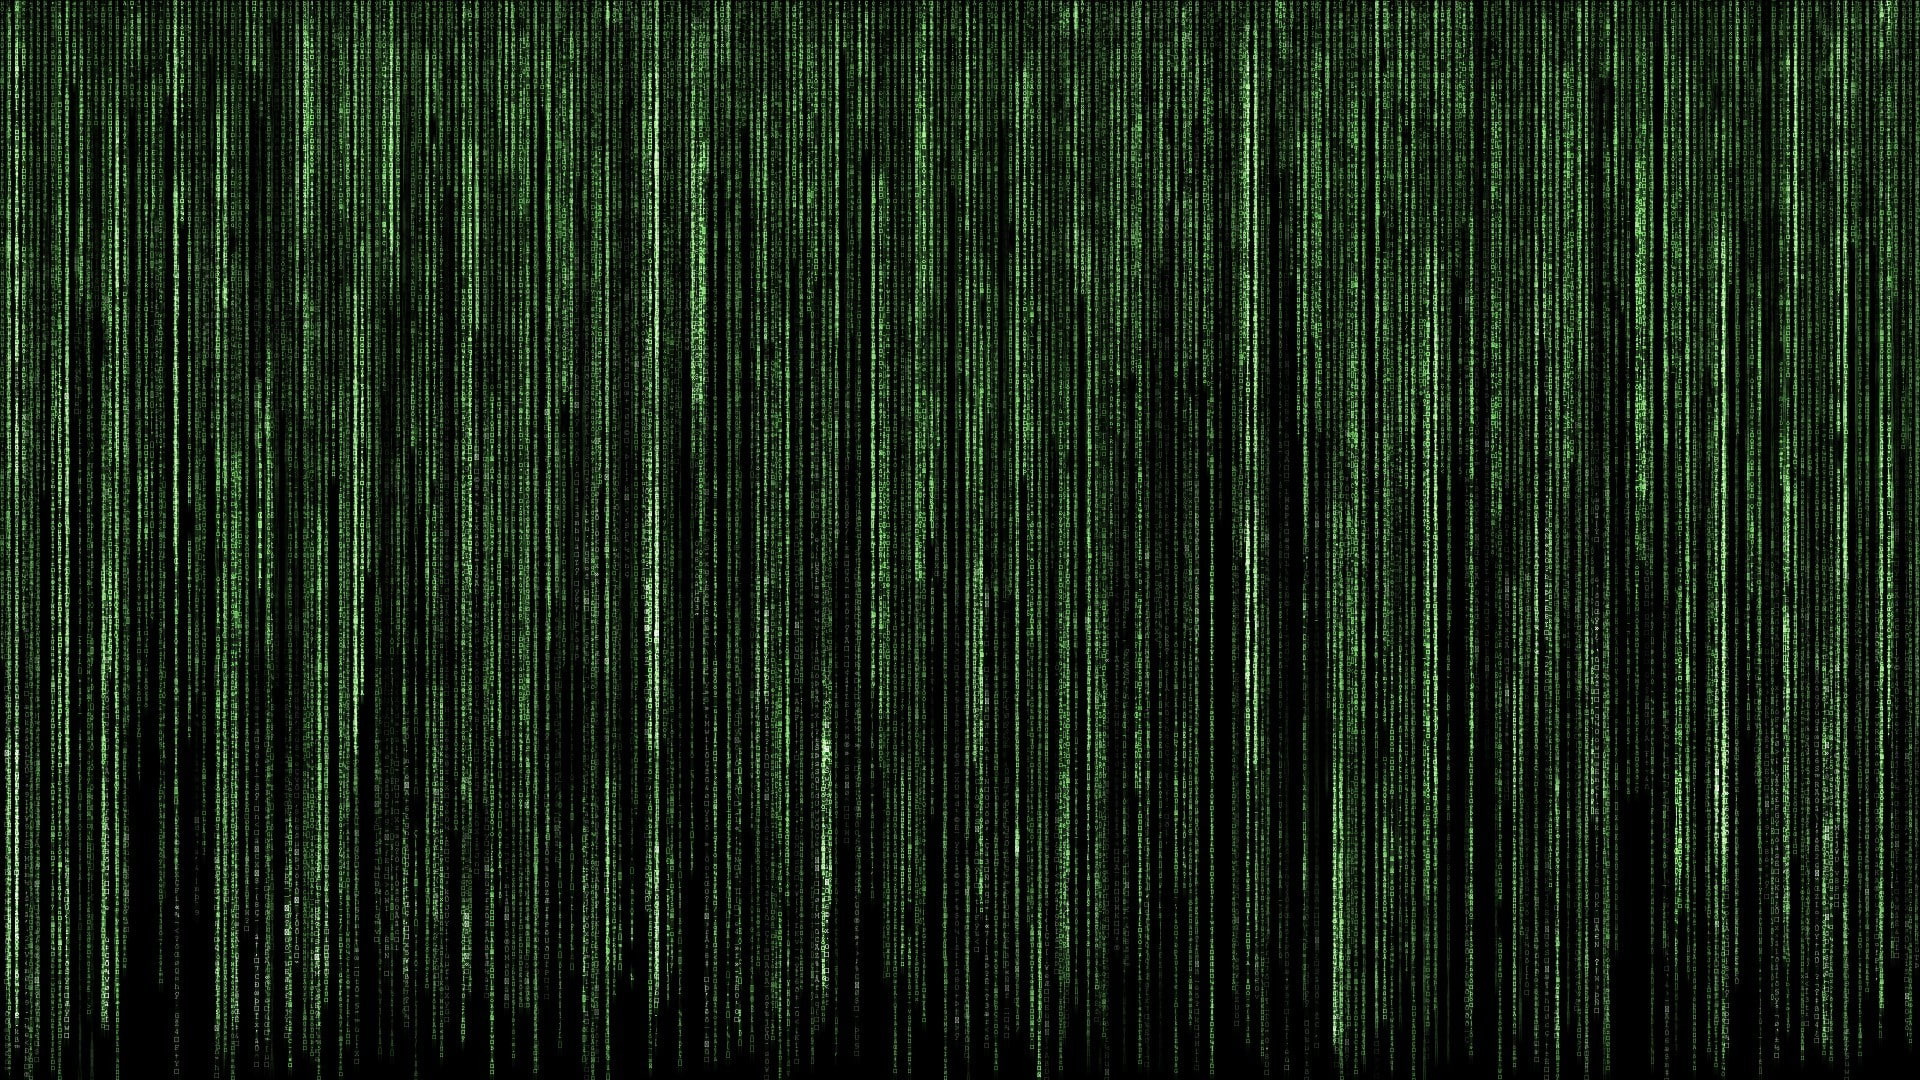 Matrix screen wallpaper, digital art, The Matrix, code, backgrounds